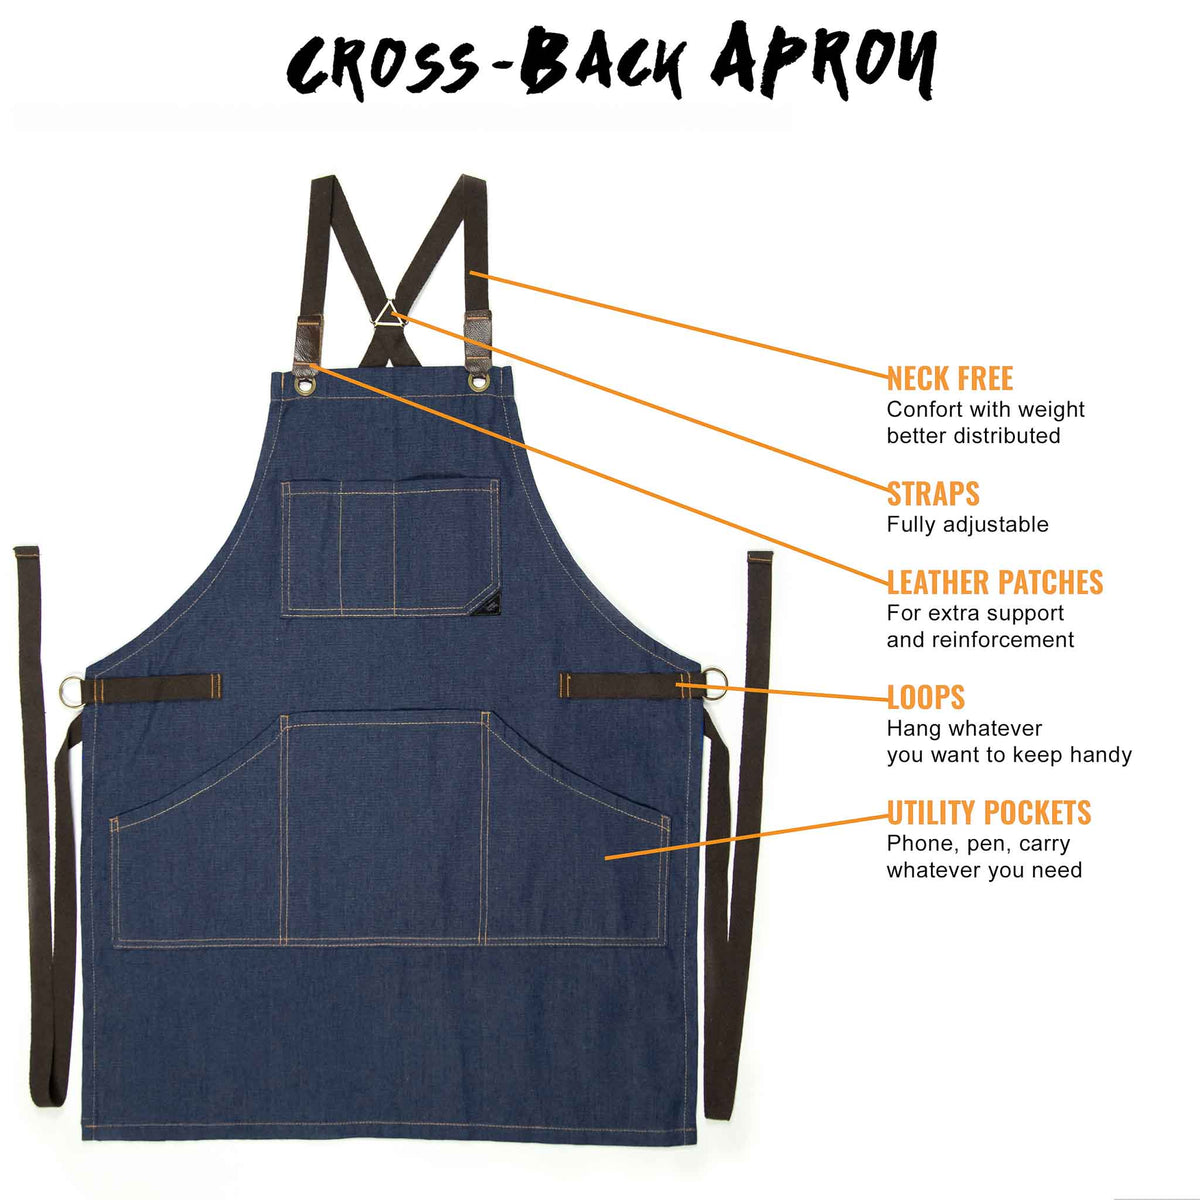 Chef Apron – Denim or Twill - Cotton Straps - Smart Pockets - Pro